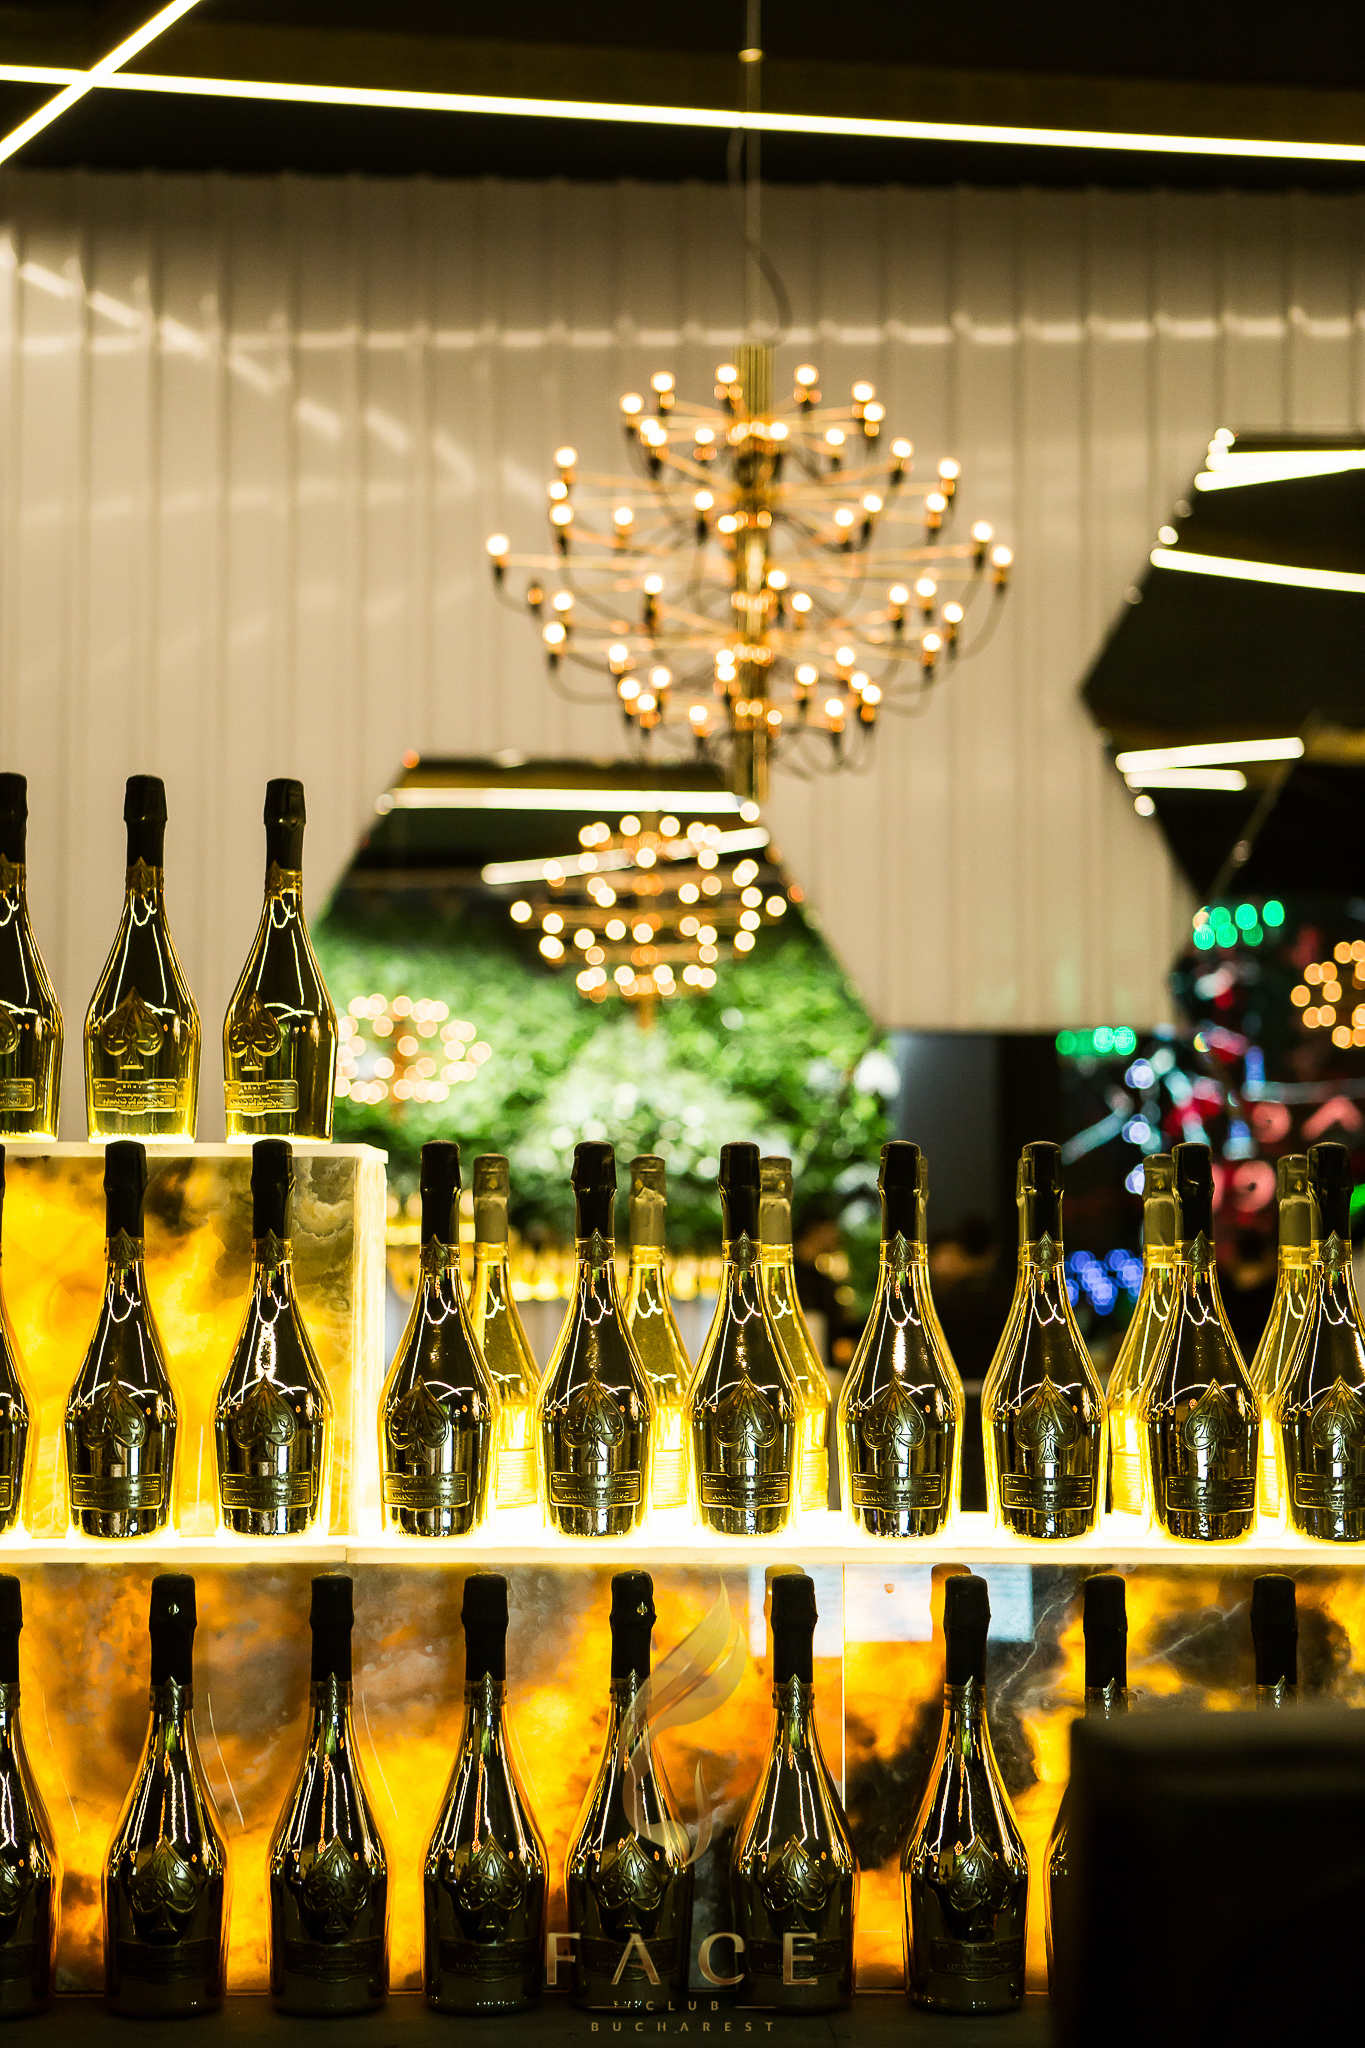 Cea mai scumpă şampanie comandată vreodată în România, un Armand de Brignac de 100.000 de euro, va fi deschisă de Revelion la Face Club!